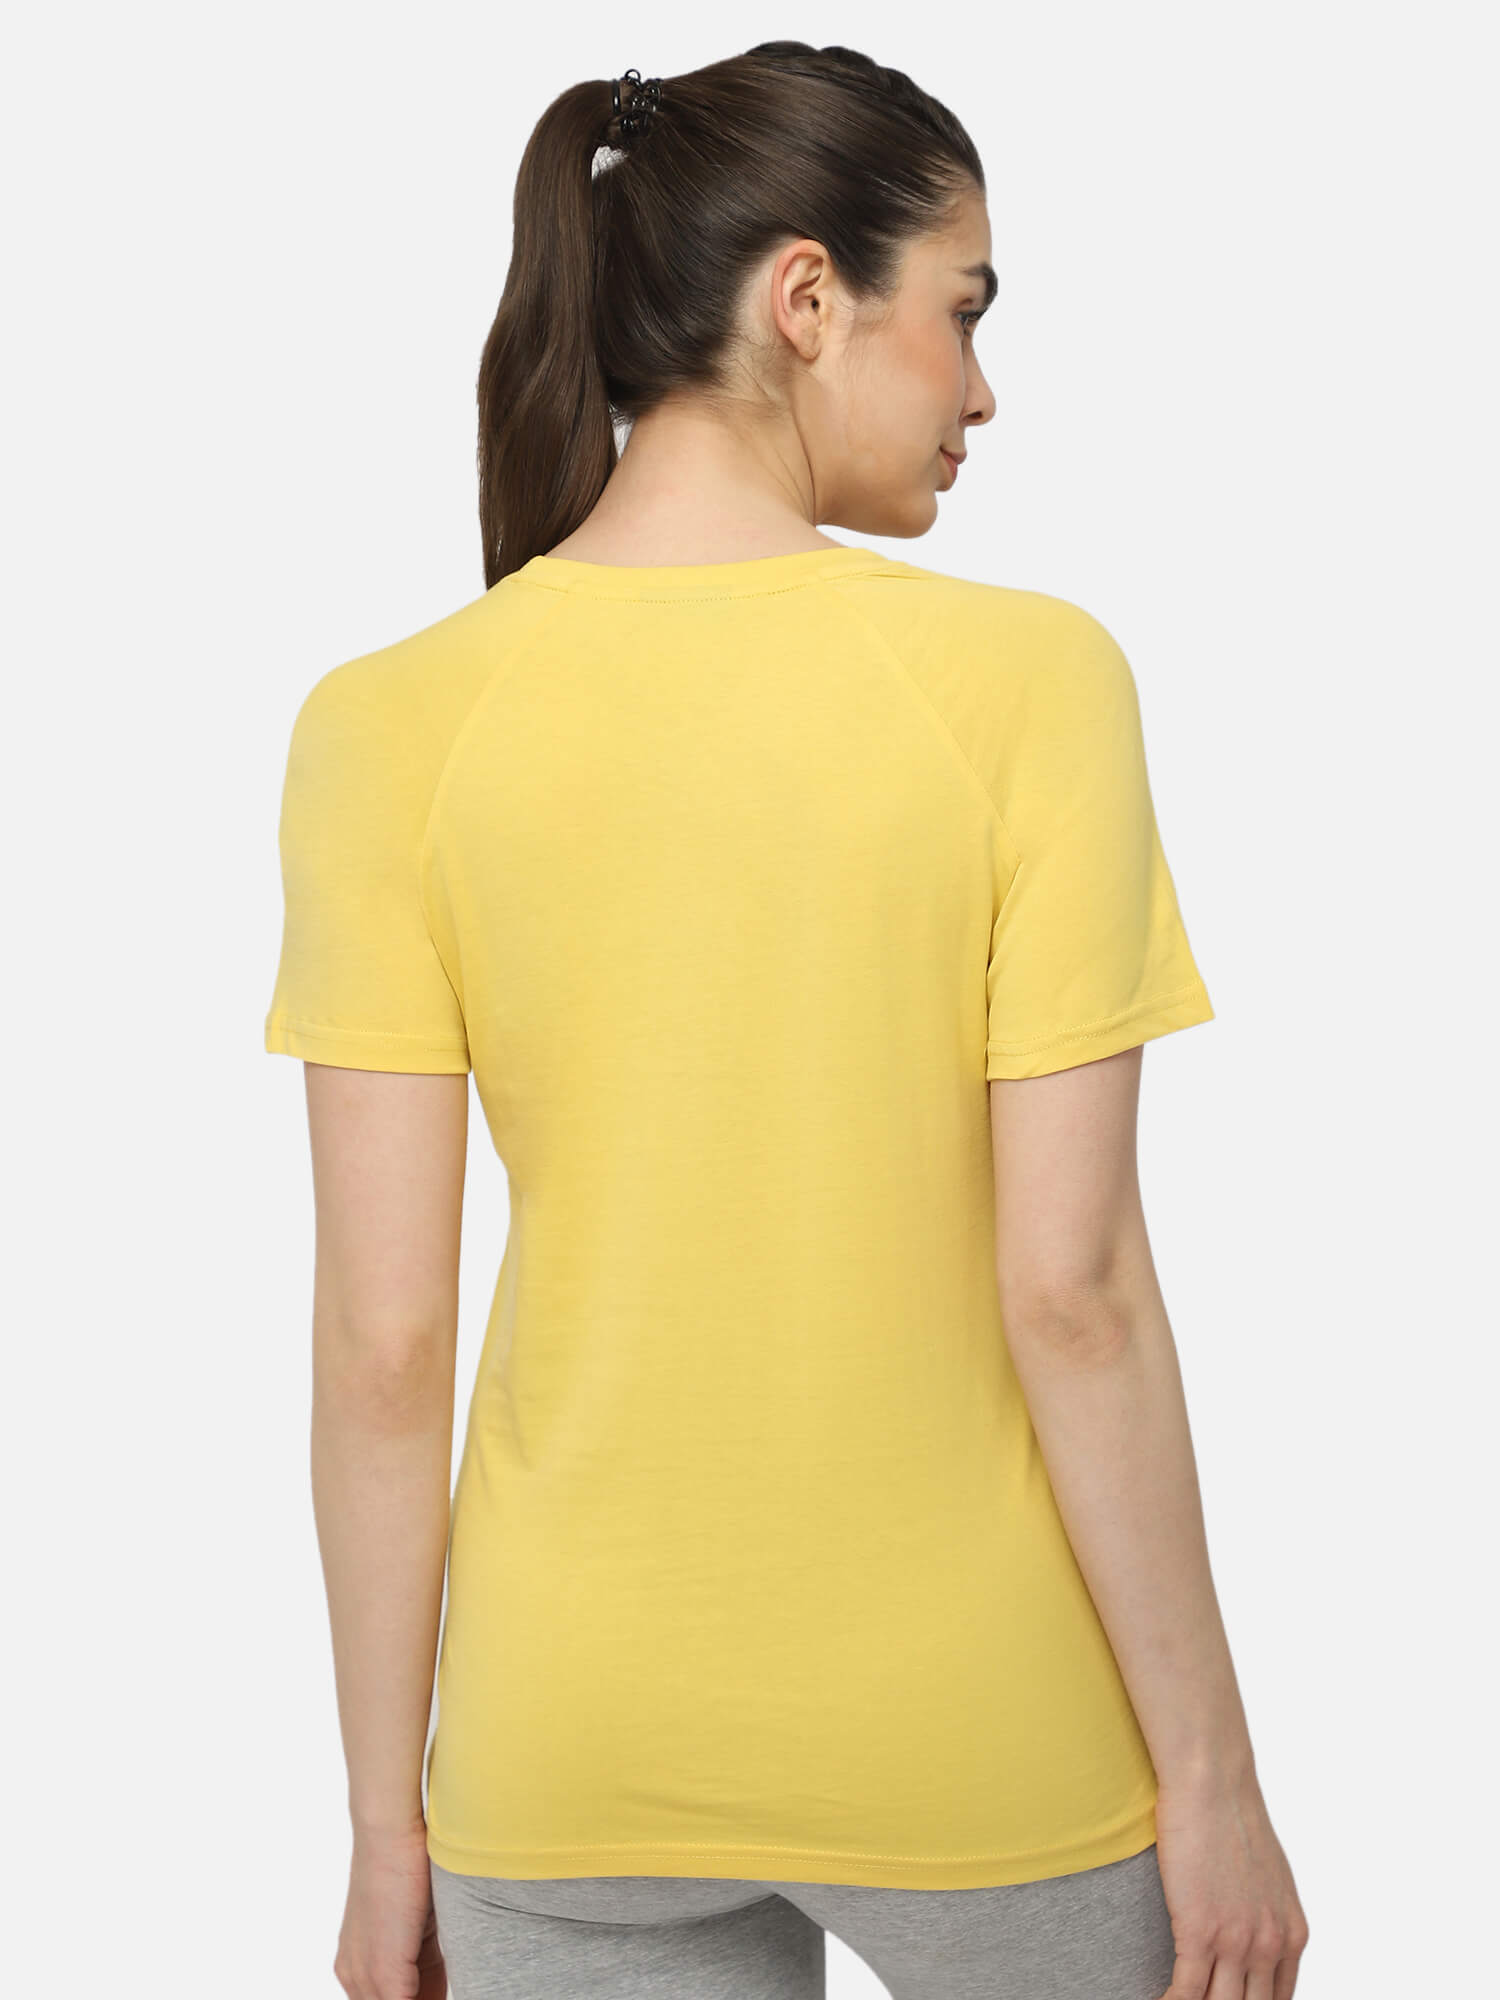 Zenia Yellow T-Shirt for Women